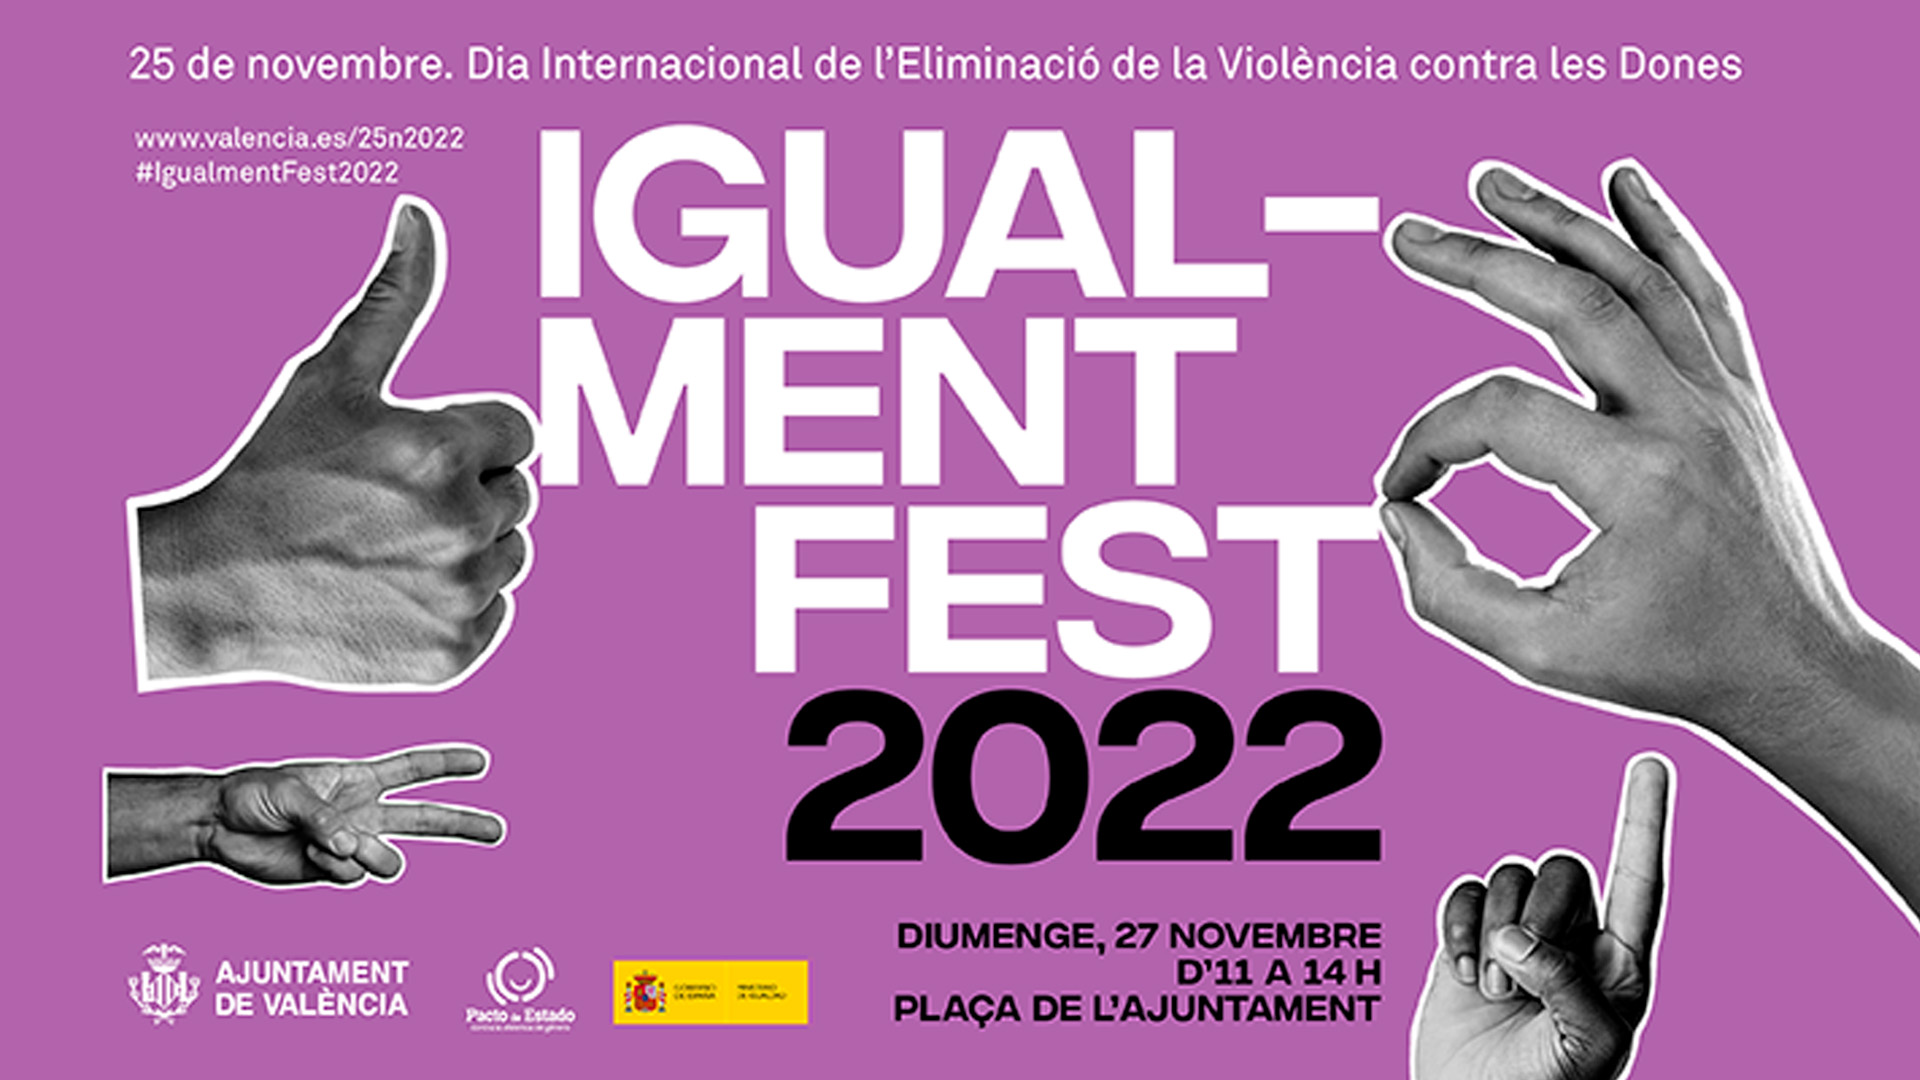 25 de novembre 2022. Dia Internacional de l'eliminació de la violència contra les dones